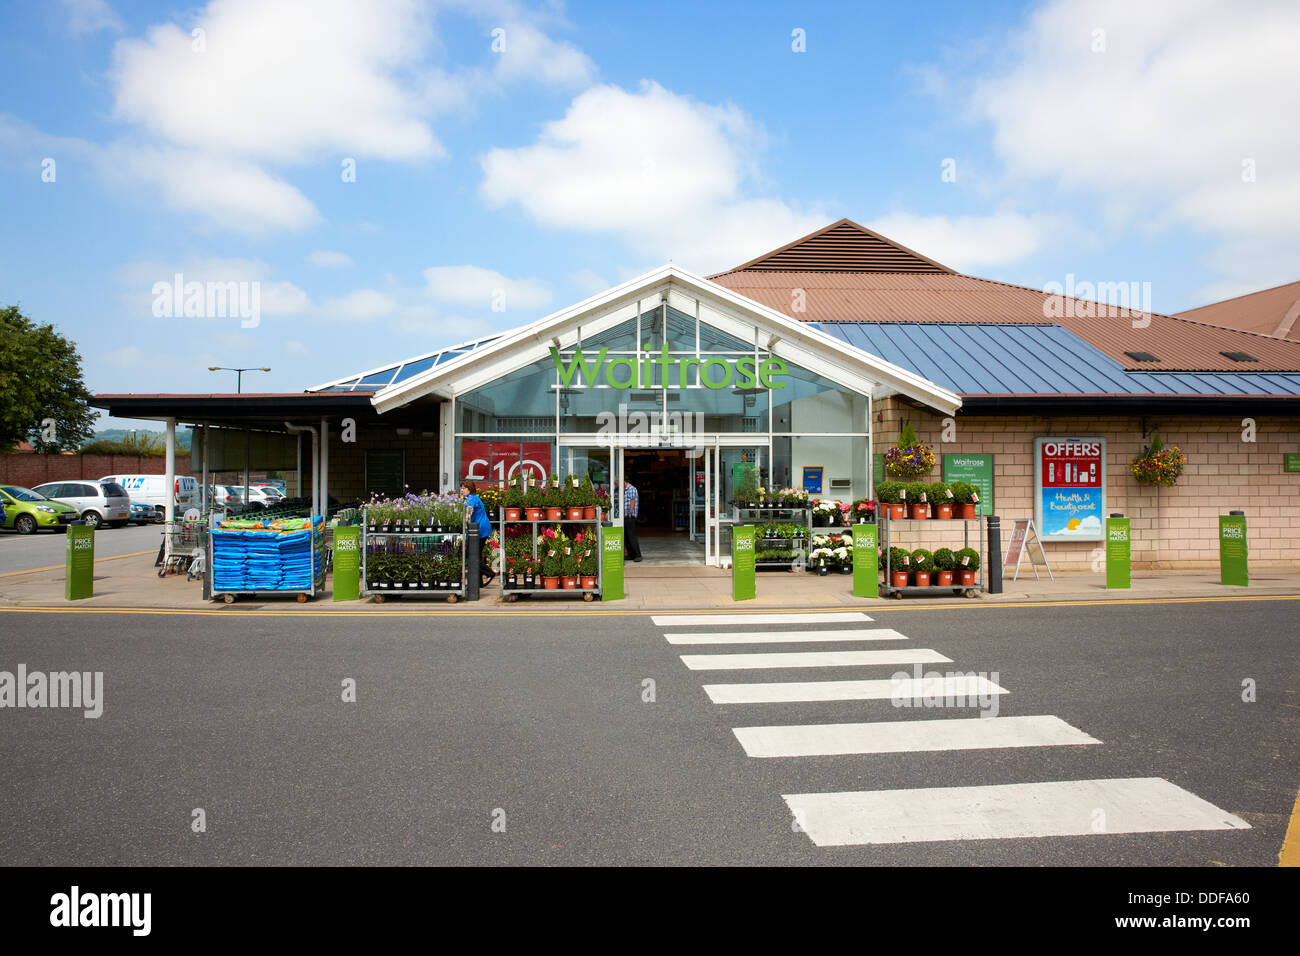 Supermarché Waitrose, Otley, West Yorkshire UK Banque D'Images